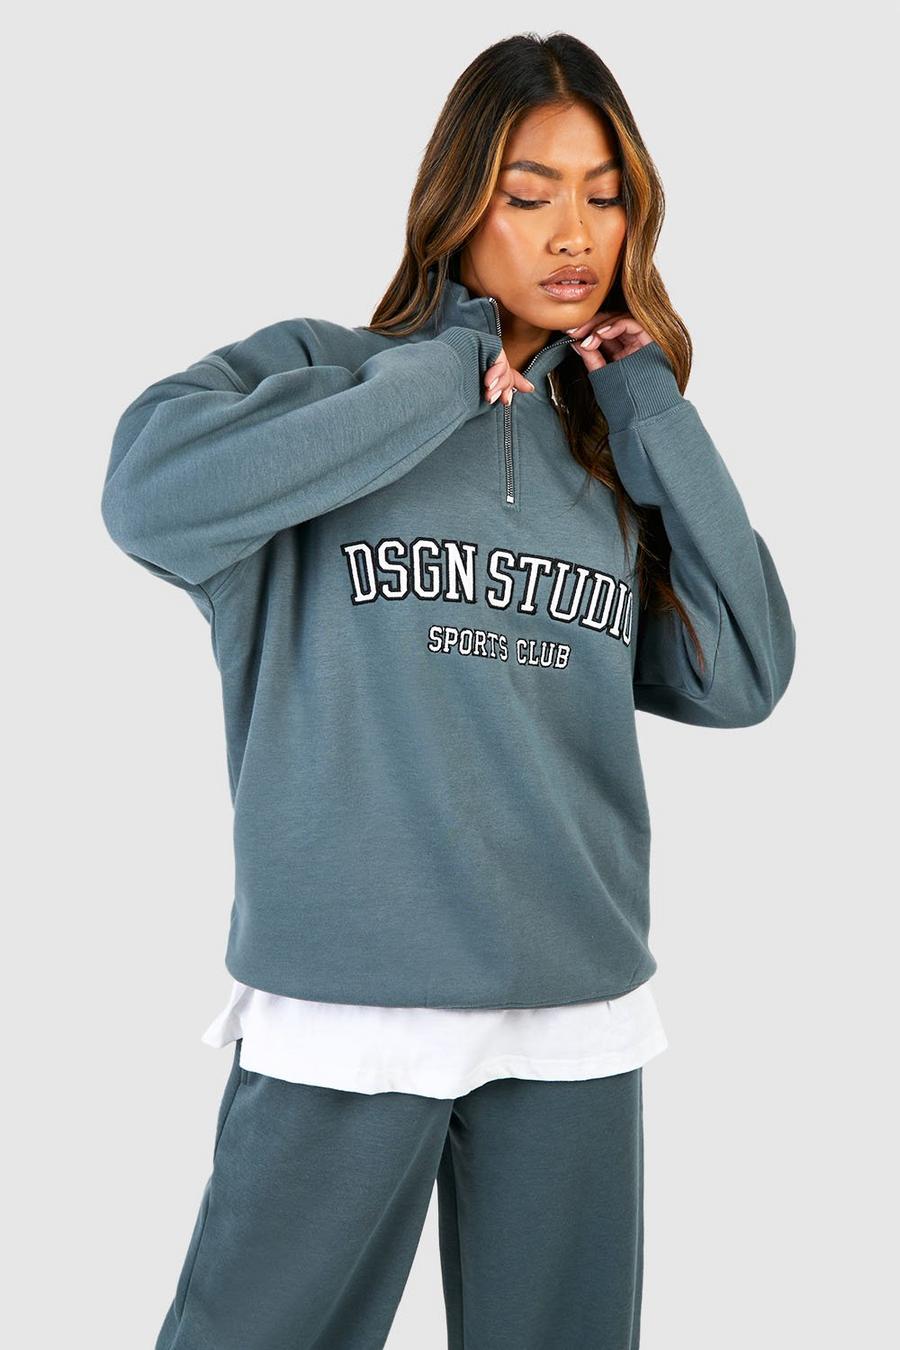 Sage Dsgn Studio Applique Oversized Half Zip Sweatshirt